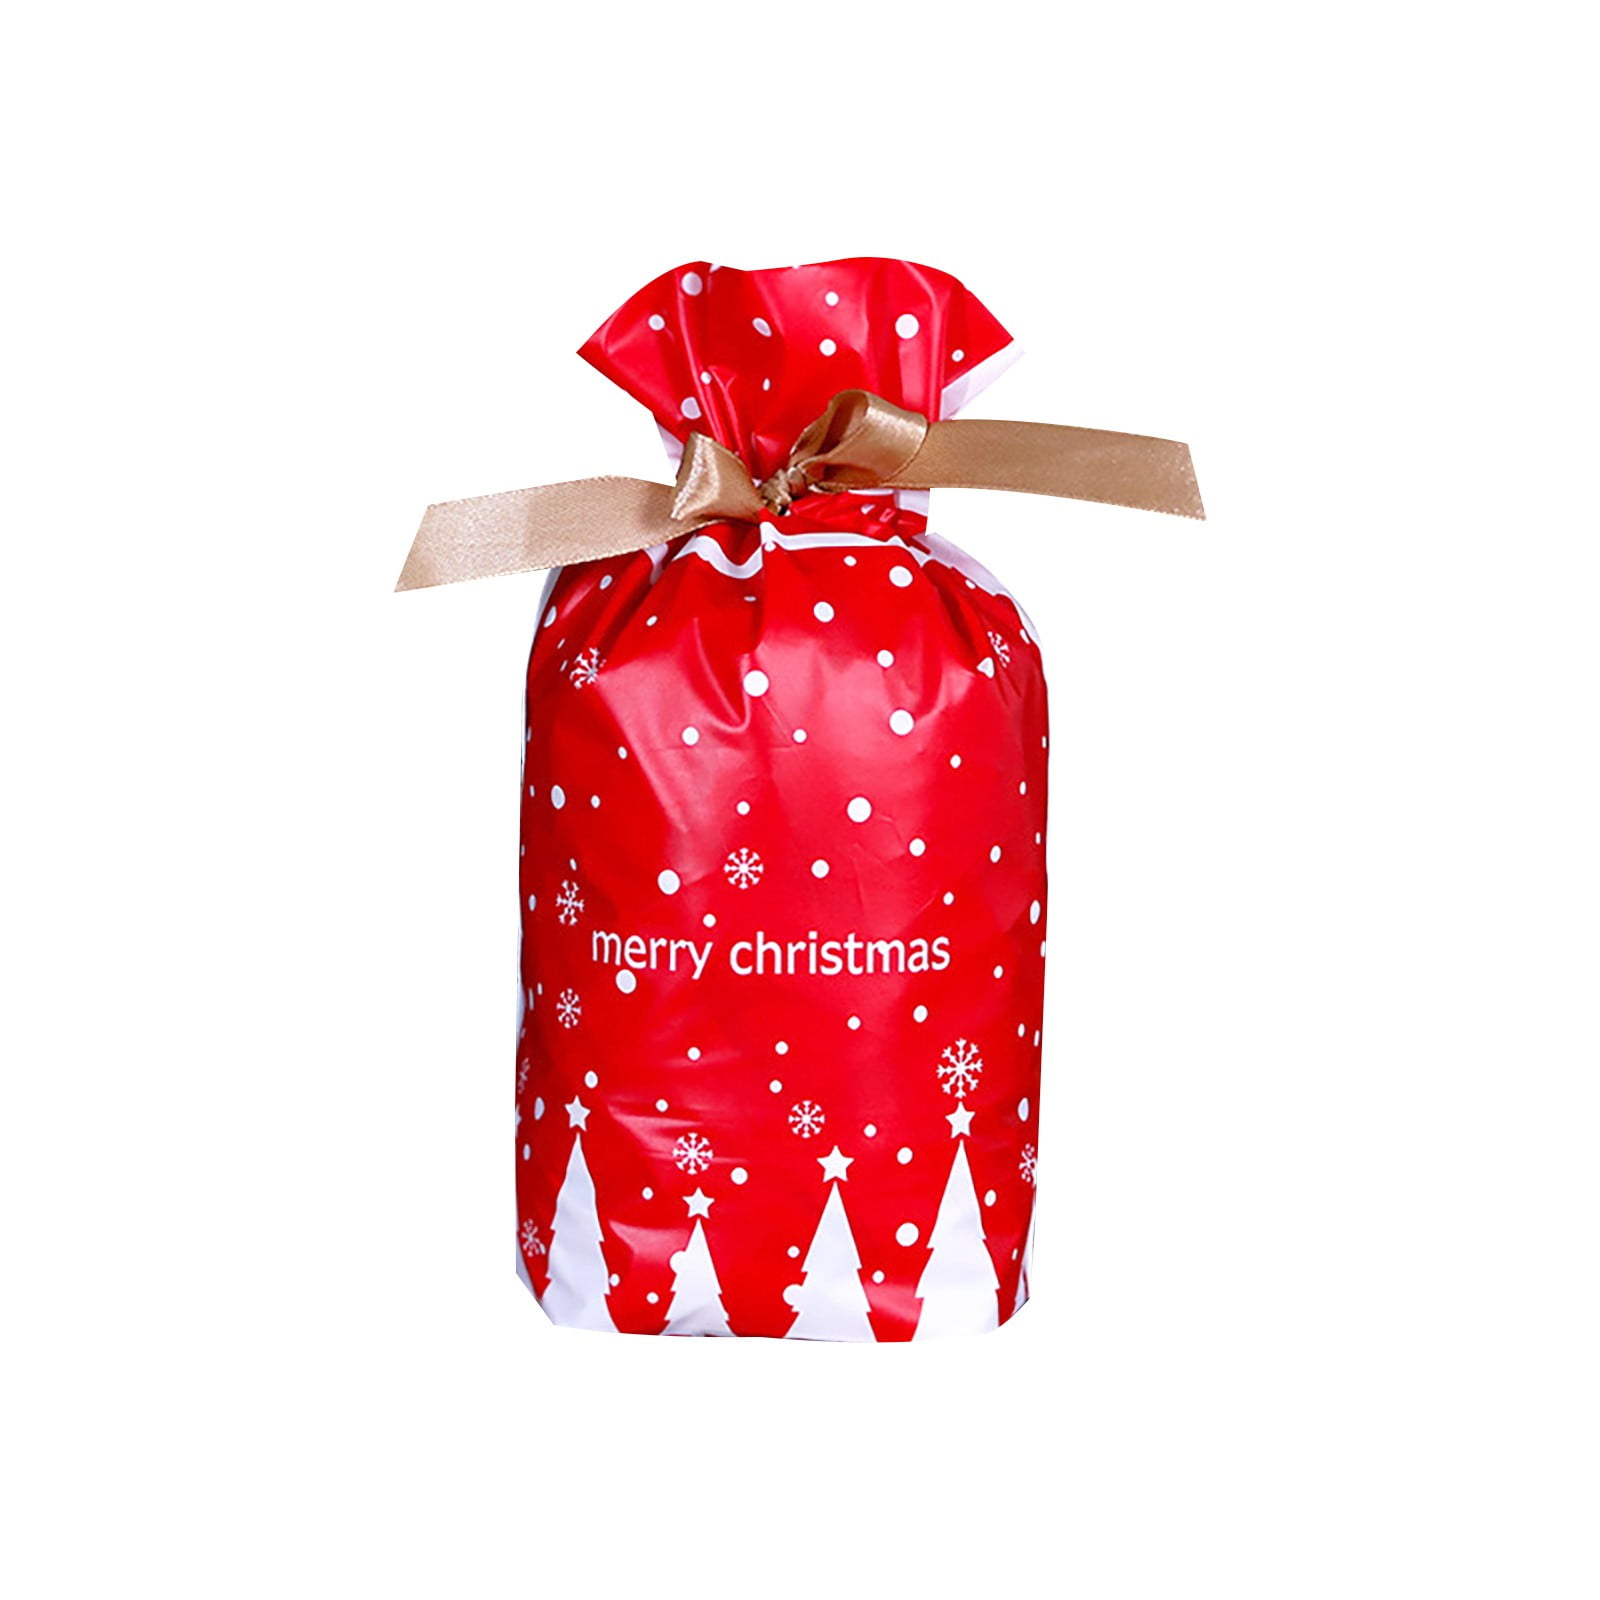 30x Christmas Sacks Reusable Drawstring Wrap Present Gift Party Bags Storage USA 